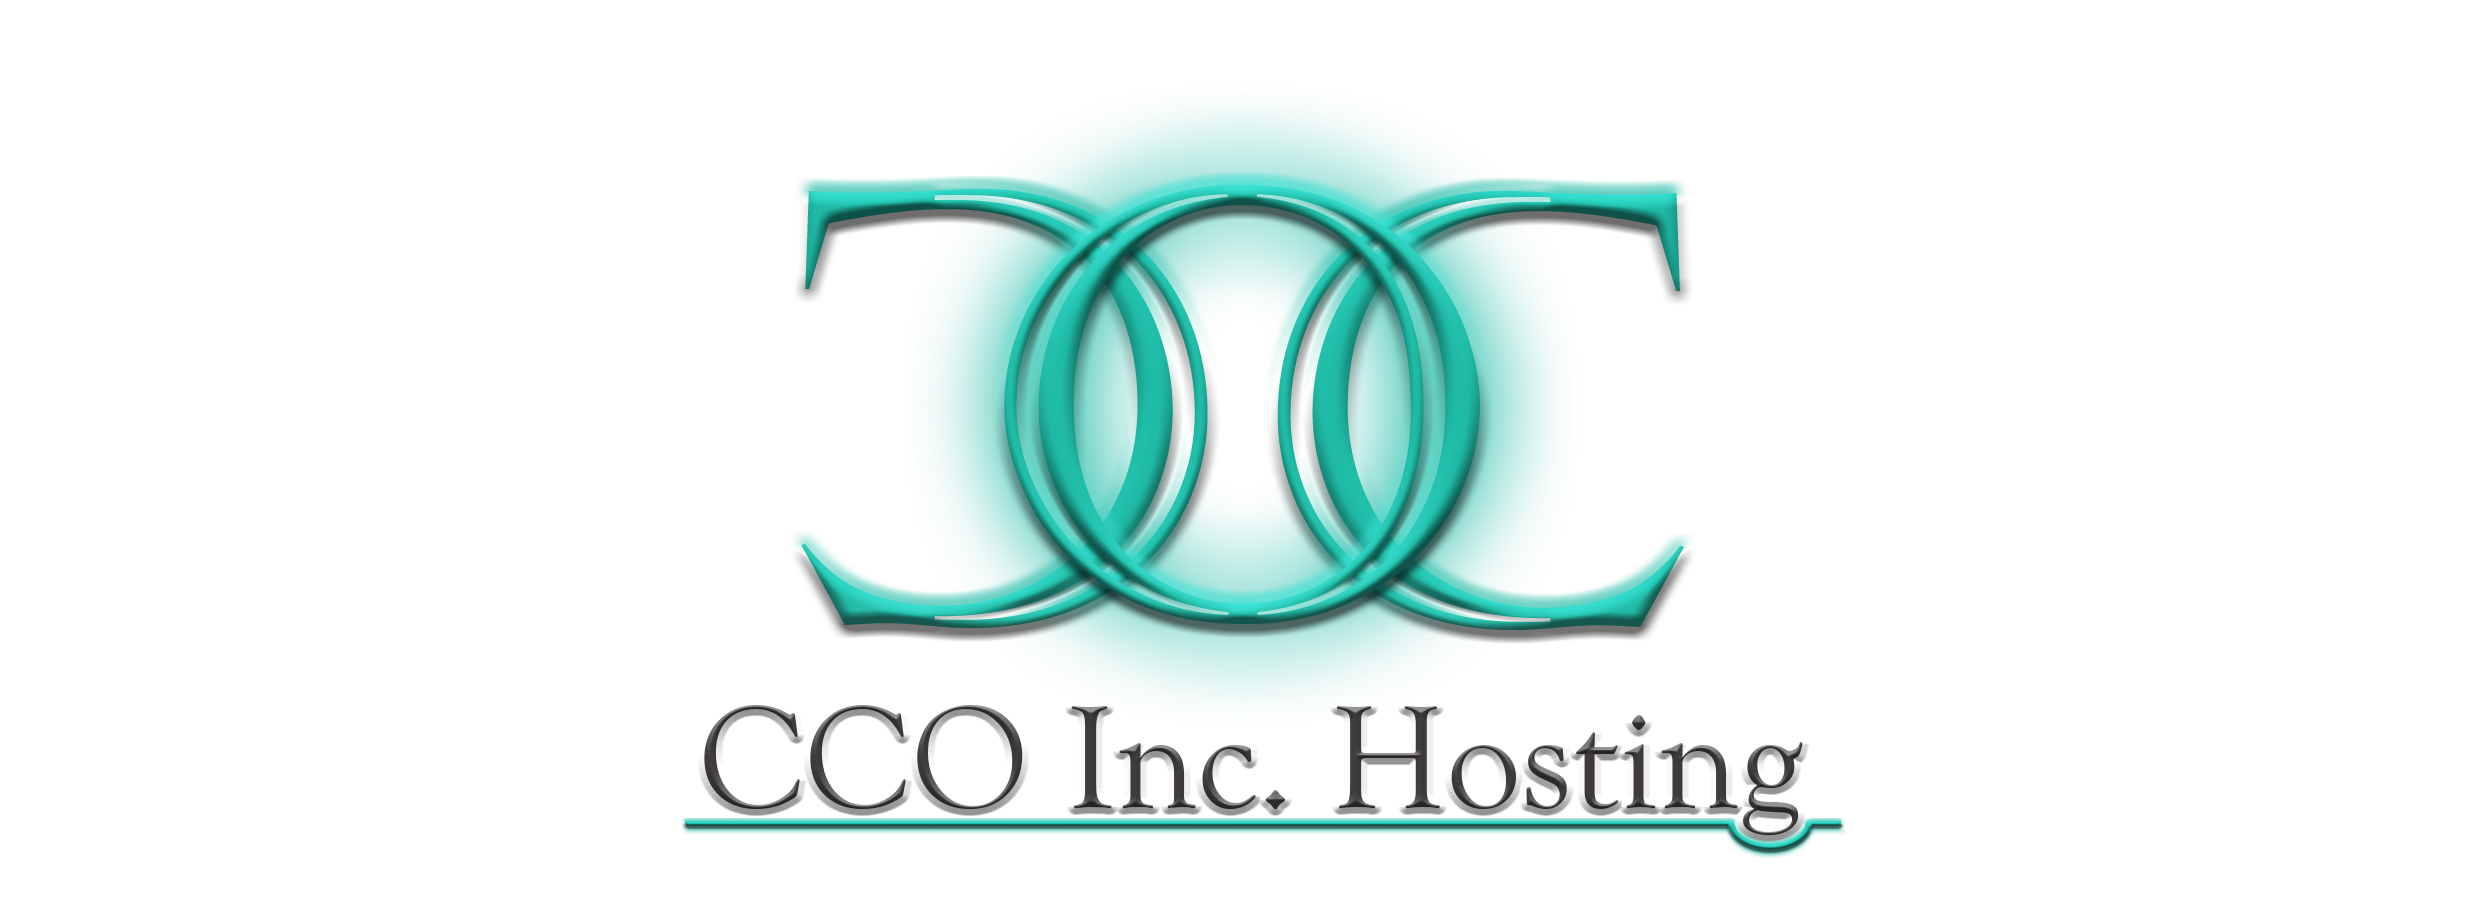 CCO Inc. Hosting